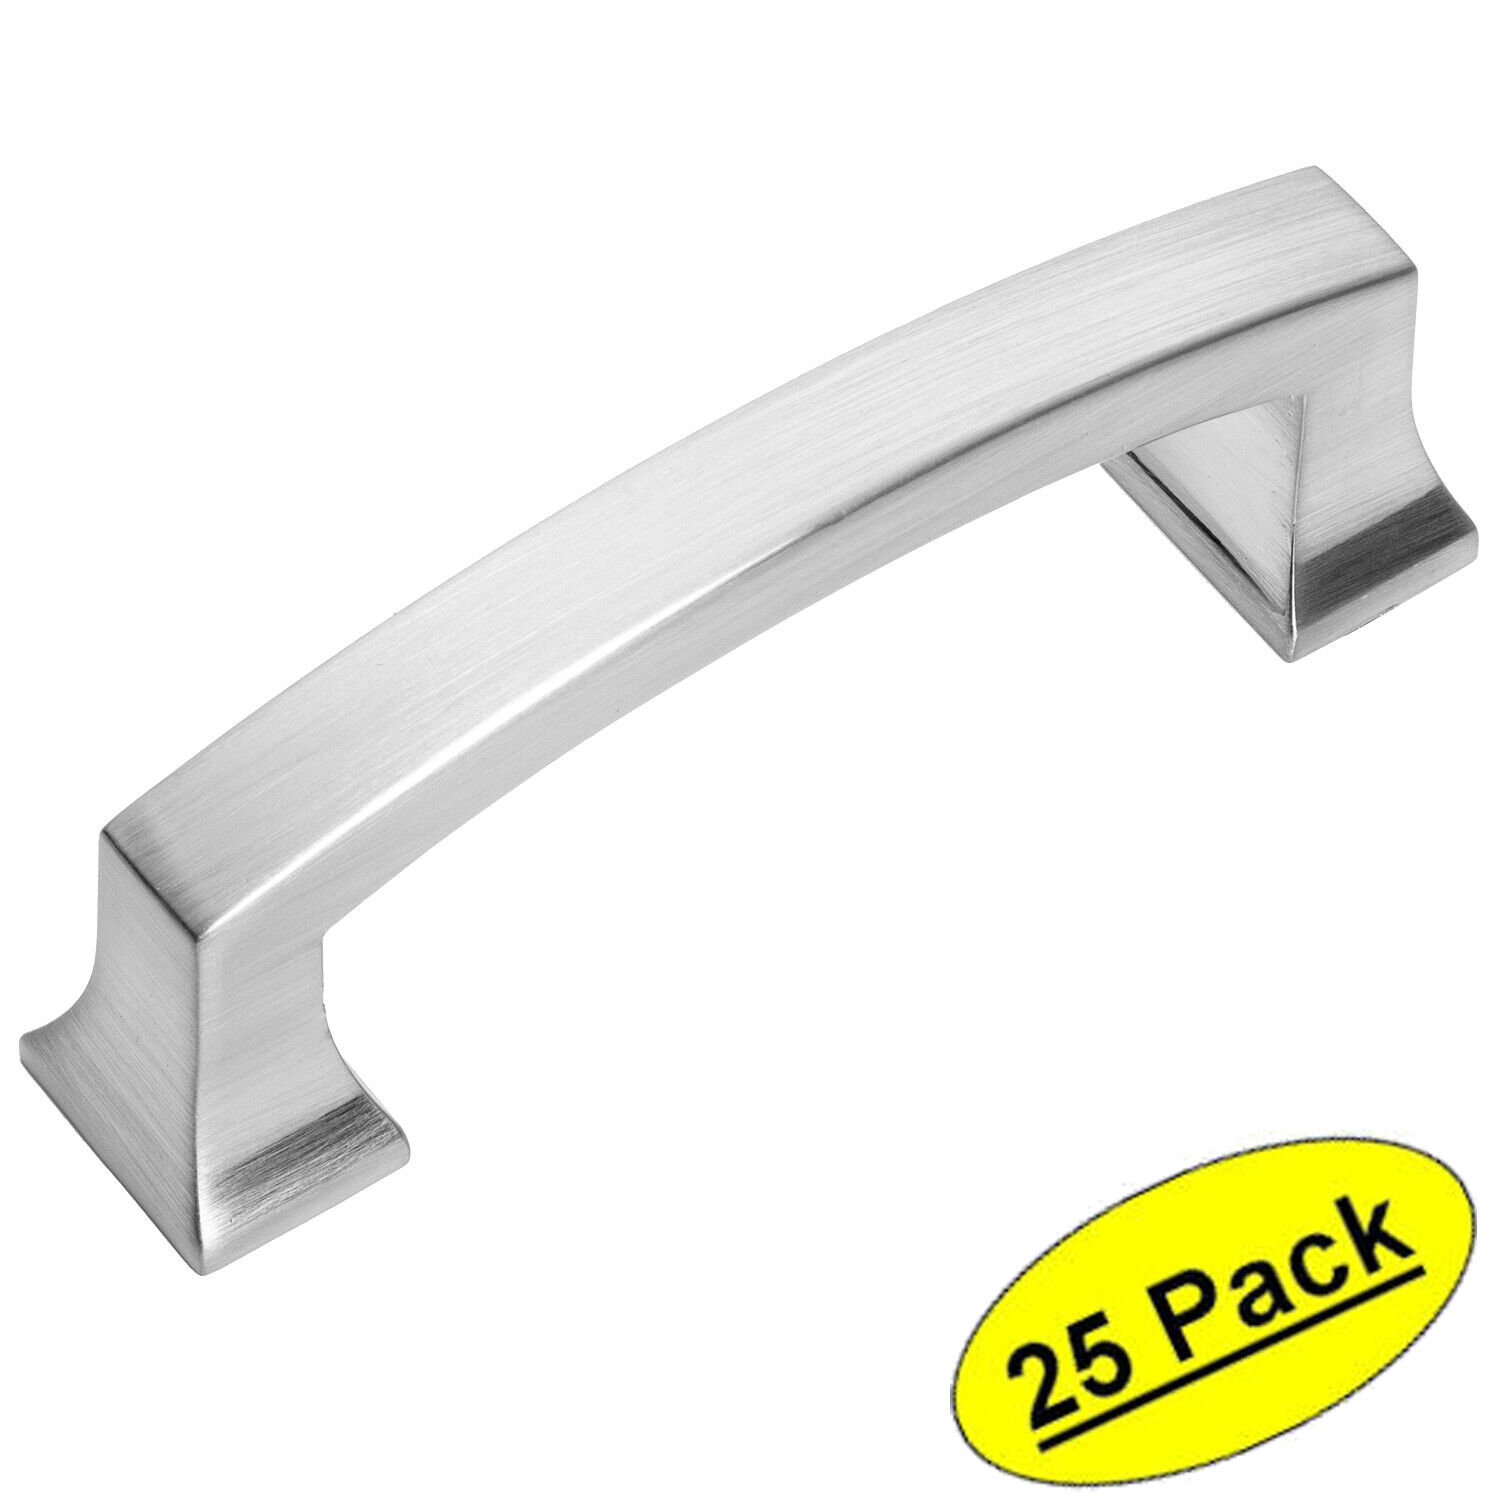 *25 Pack* Cosmas Cabinet Hardware Satin Nickel Contemporary Pulls #755-3SN Popularna niska cena